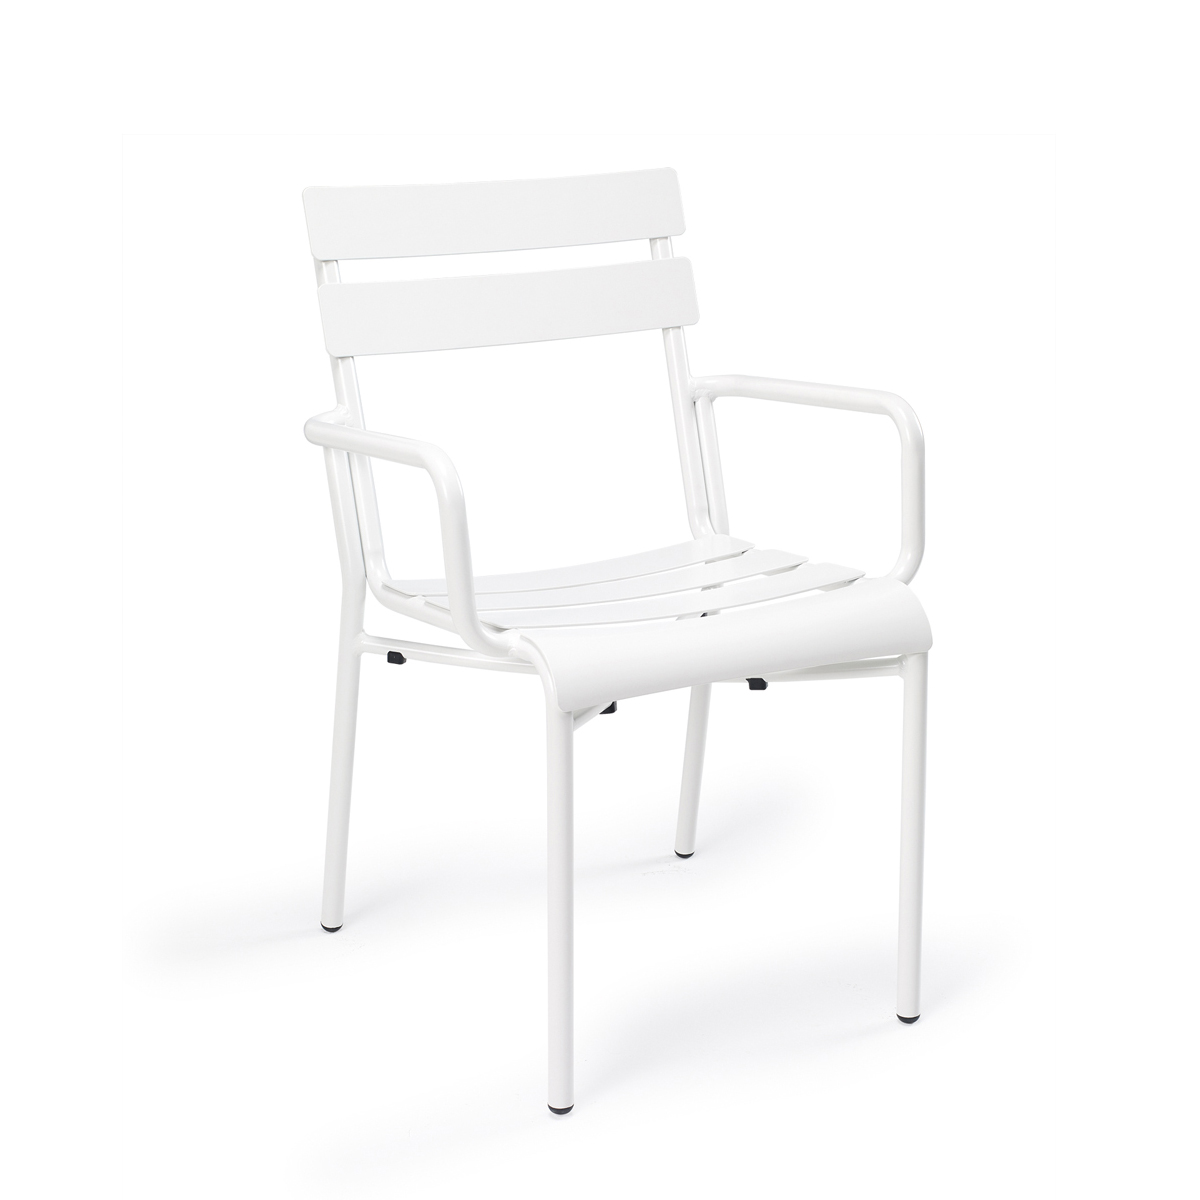 sillón versalles aluminio